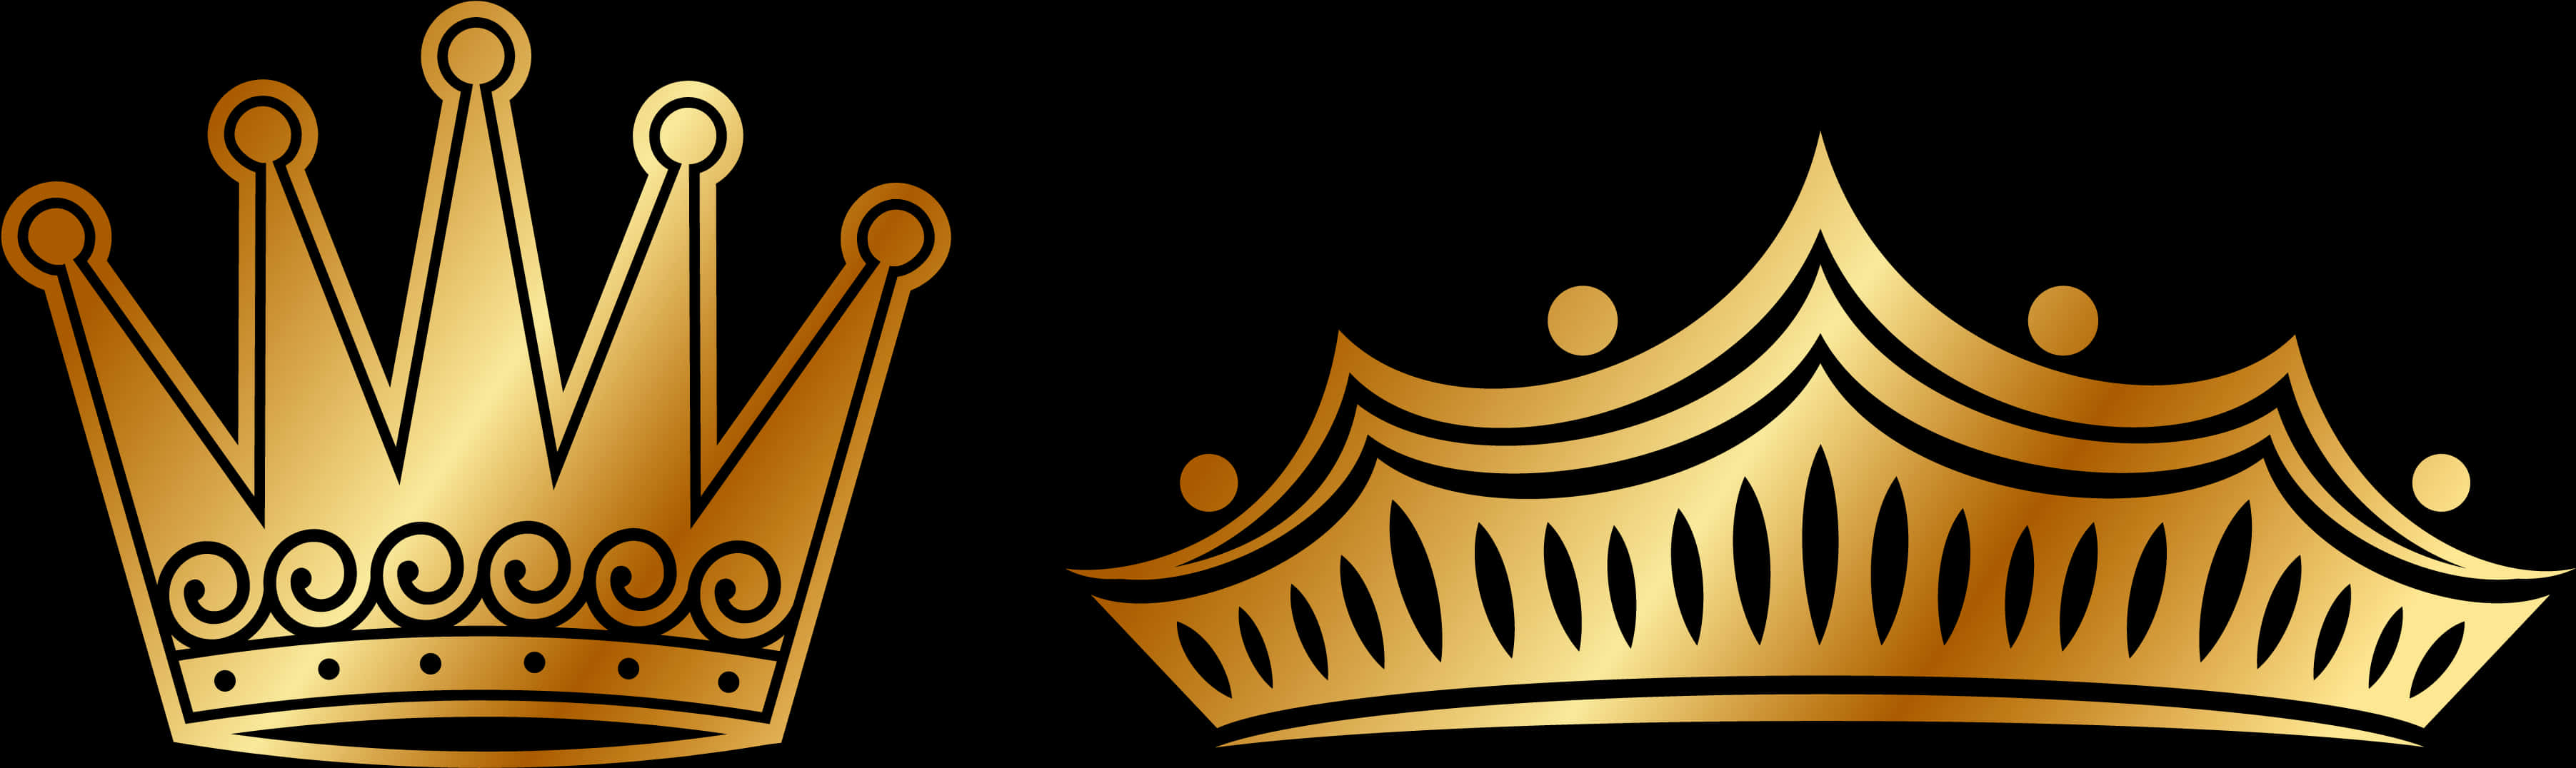 Golden Crowns Vector Illustration PNG